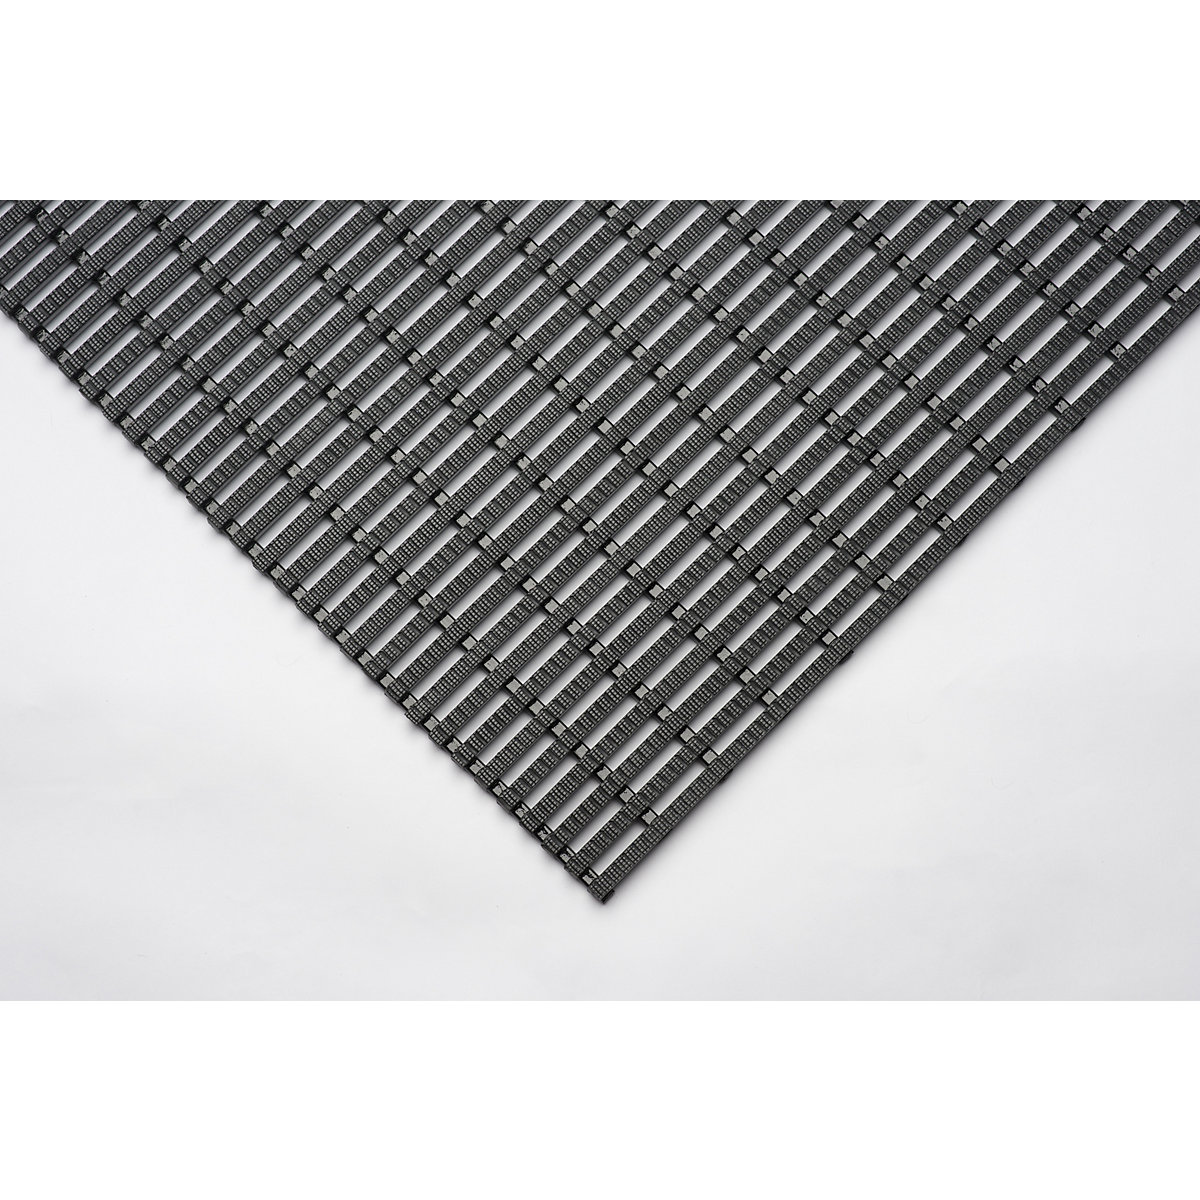 Industrijska prostirka, protuklizna – EHA, rola od 10 m, u crnoj boji, širina 600 mm-1